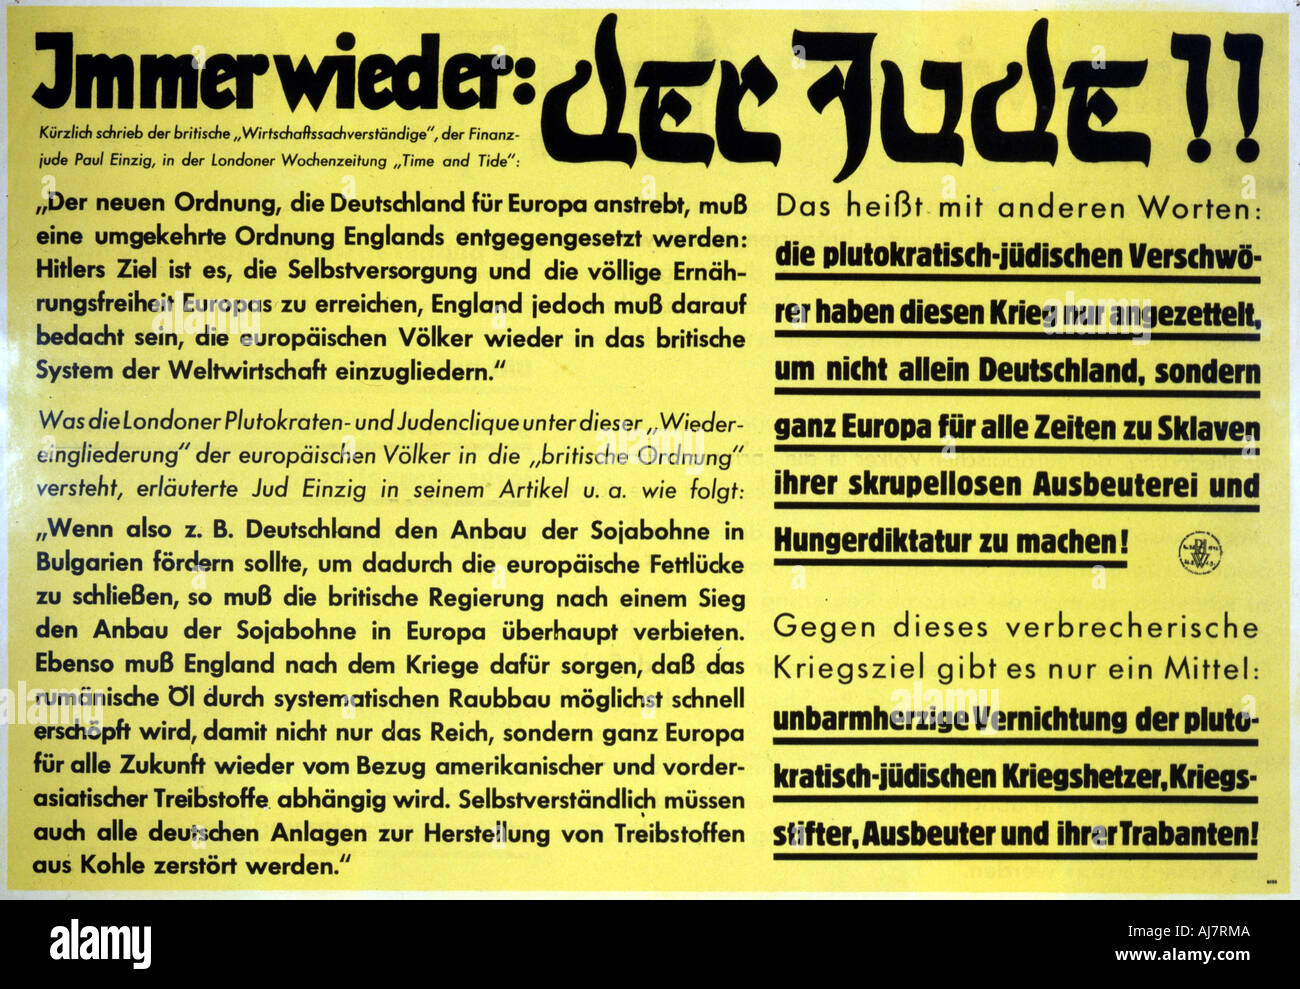 "Ancora una volta: l'Ebreo!!", Tedesco propaganda antisemita foglietto, c1933-1945. Artista: sconosciuto Foto Stock